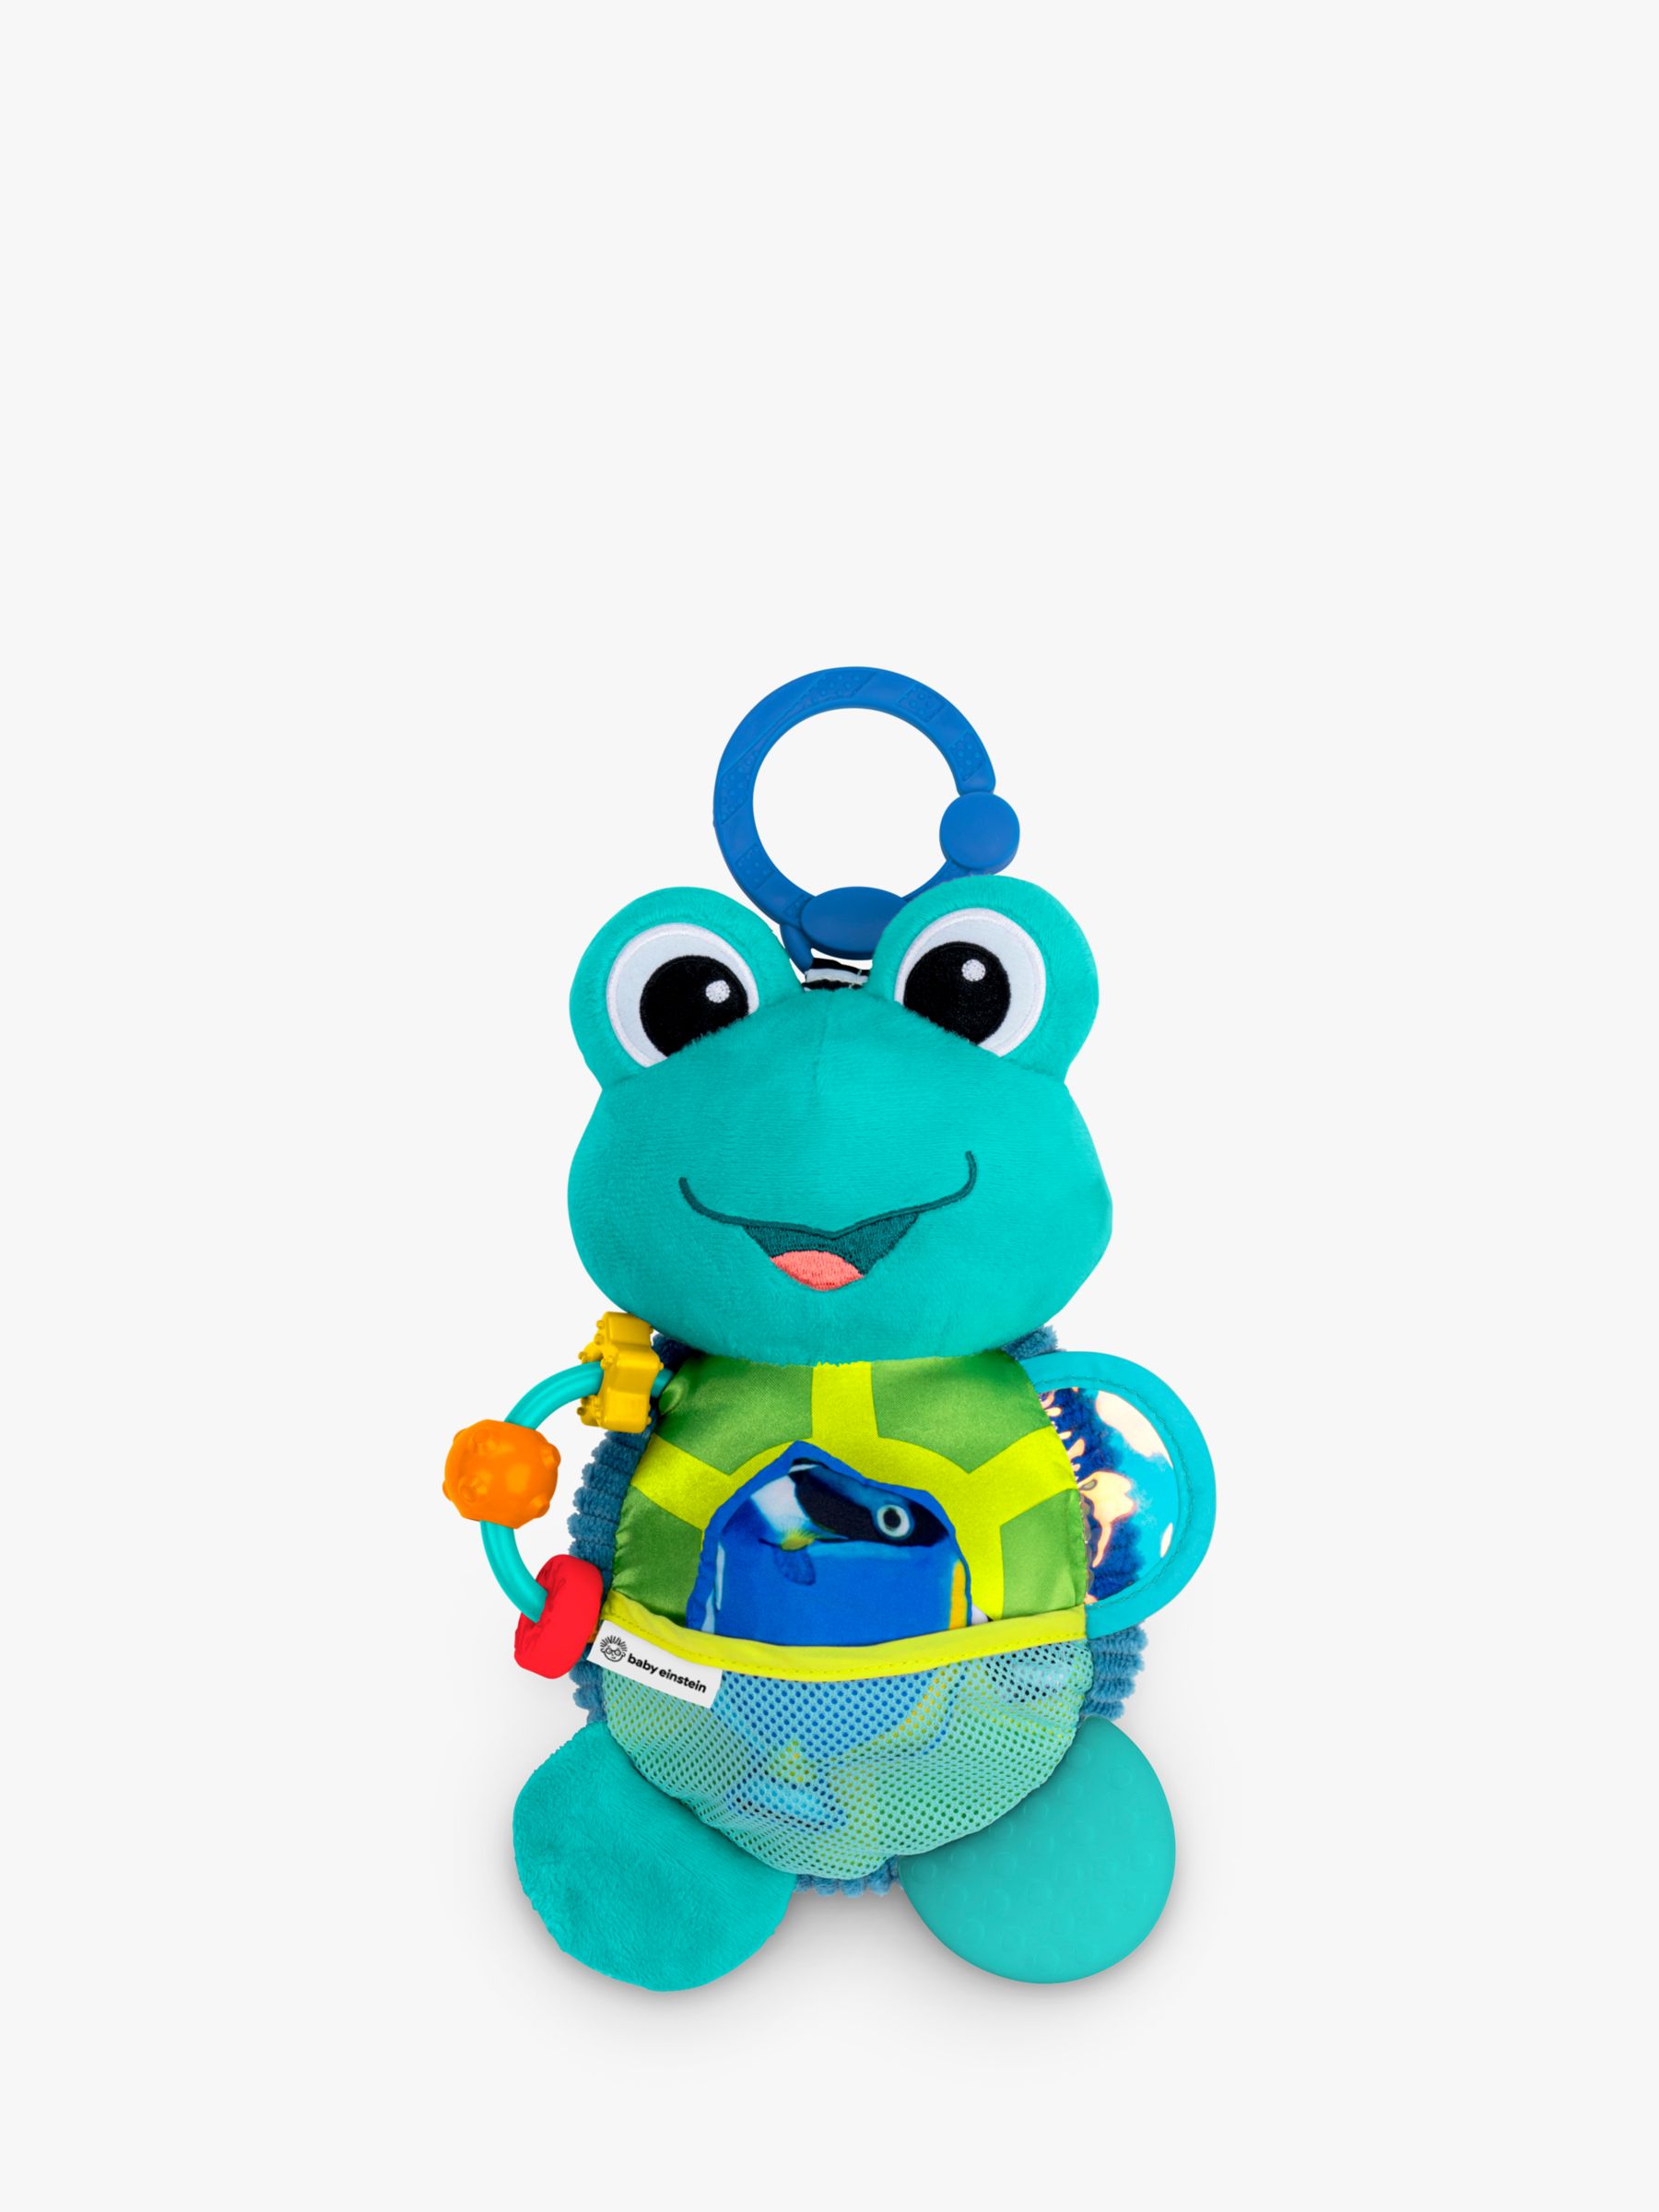 Baby Einstein Ocean Explorers Neptune's Sensory Sidekick Plush Toy